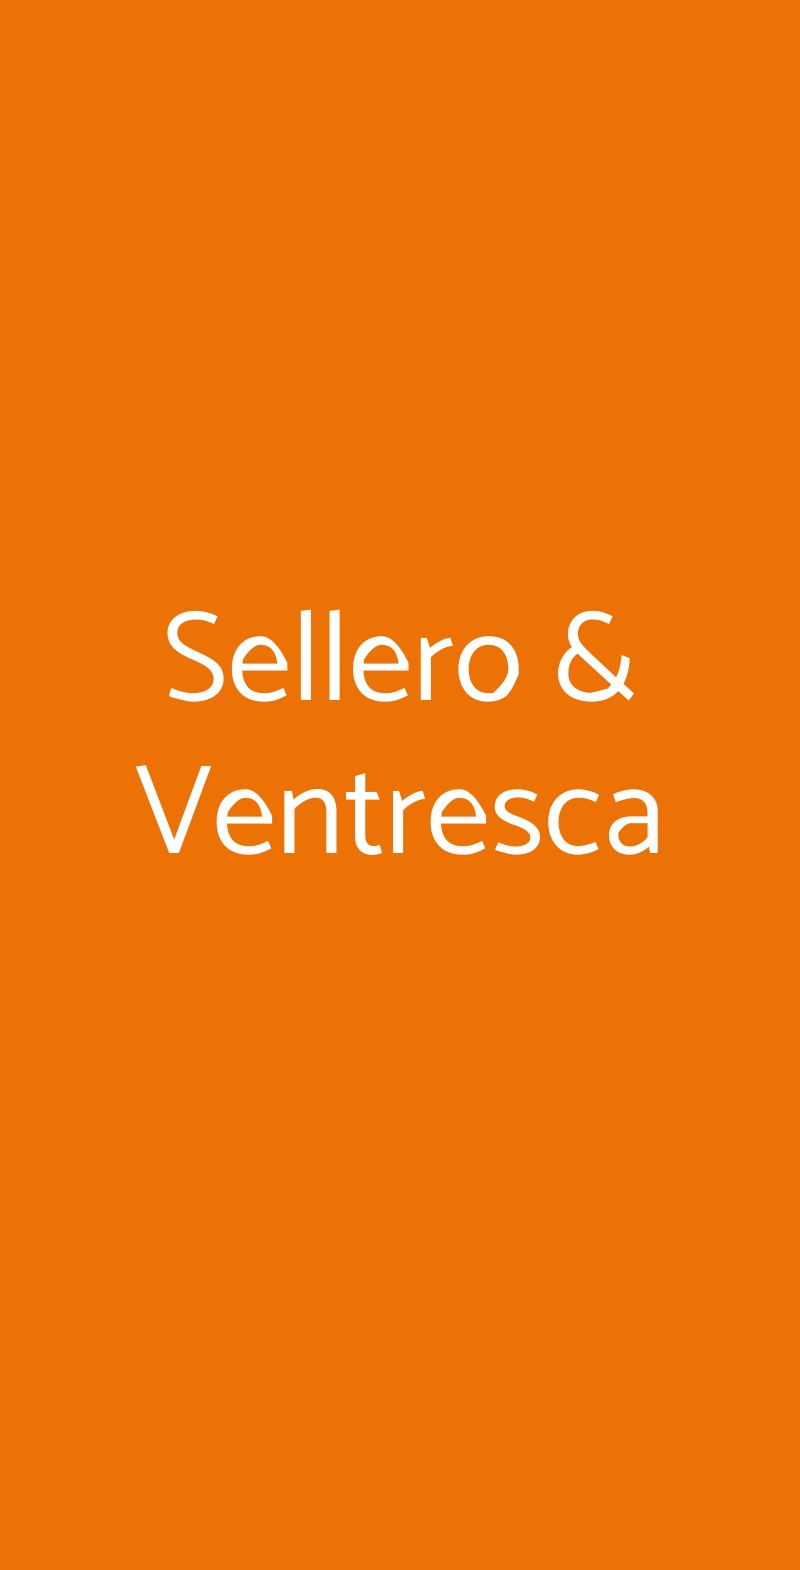 Sellero & Ventresca Roma menù 1 pagina